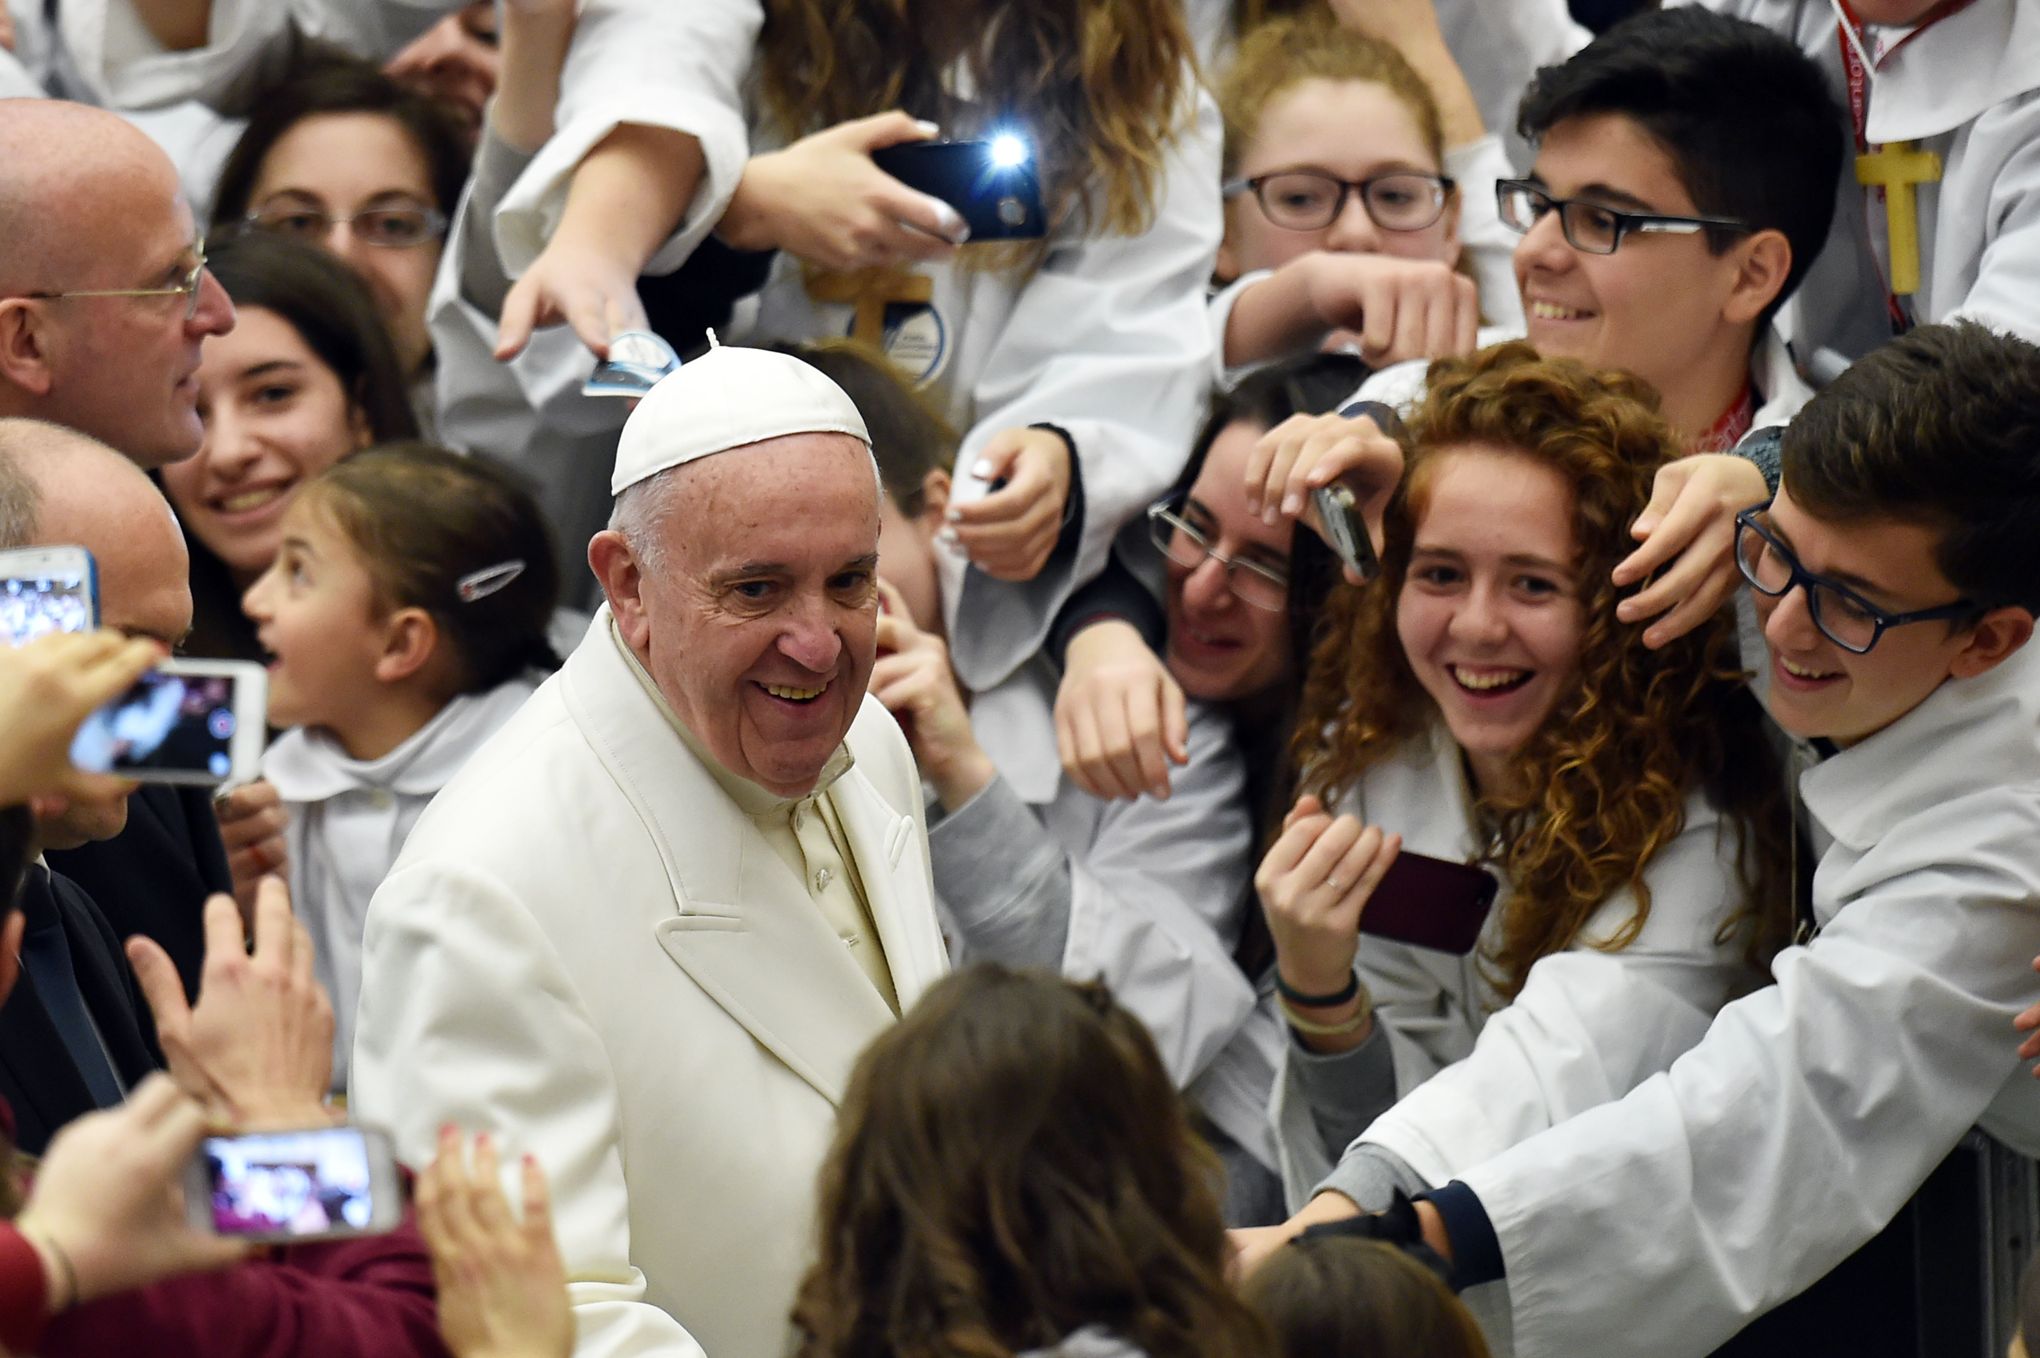 Юбилейное послание Папы подросткам: делайте ставку на высокие идеалы